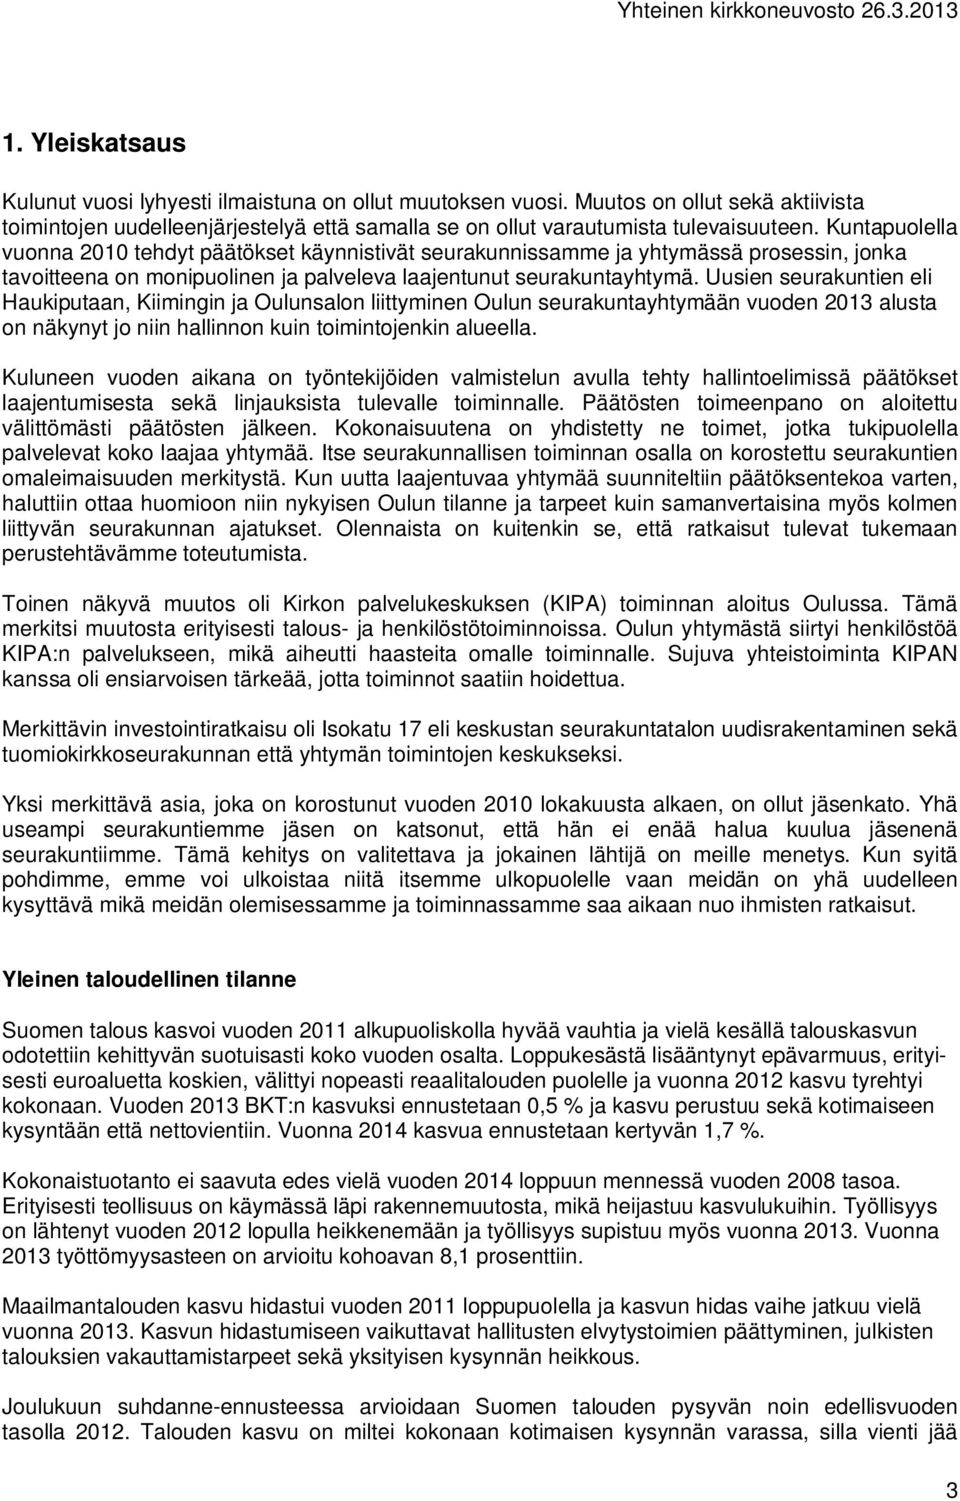 Uusien seurakuntien eli Haukiputaan, Kiimingin ja Oulunsalon liittyminen Oulun seurakuntayhtymään vuoden 2013 alusta on näkynyt jo niin hallinnon kuin toimintojenkin alueella.